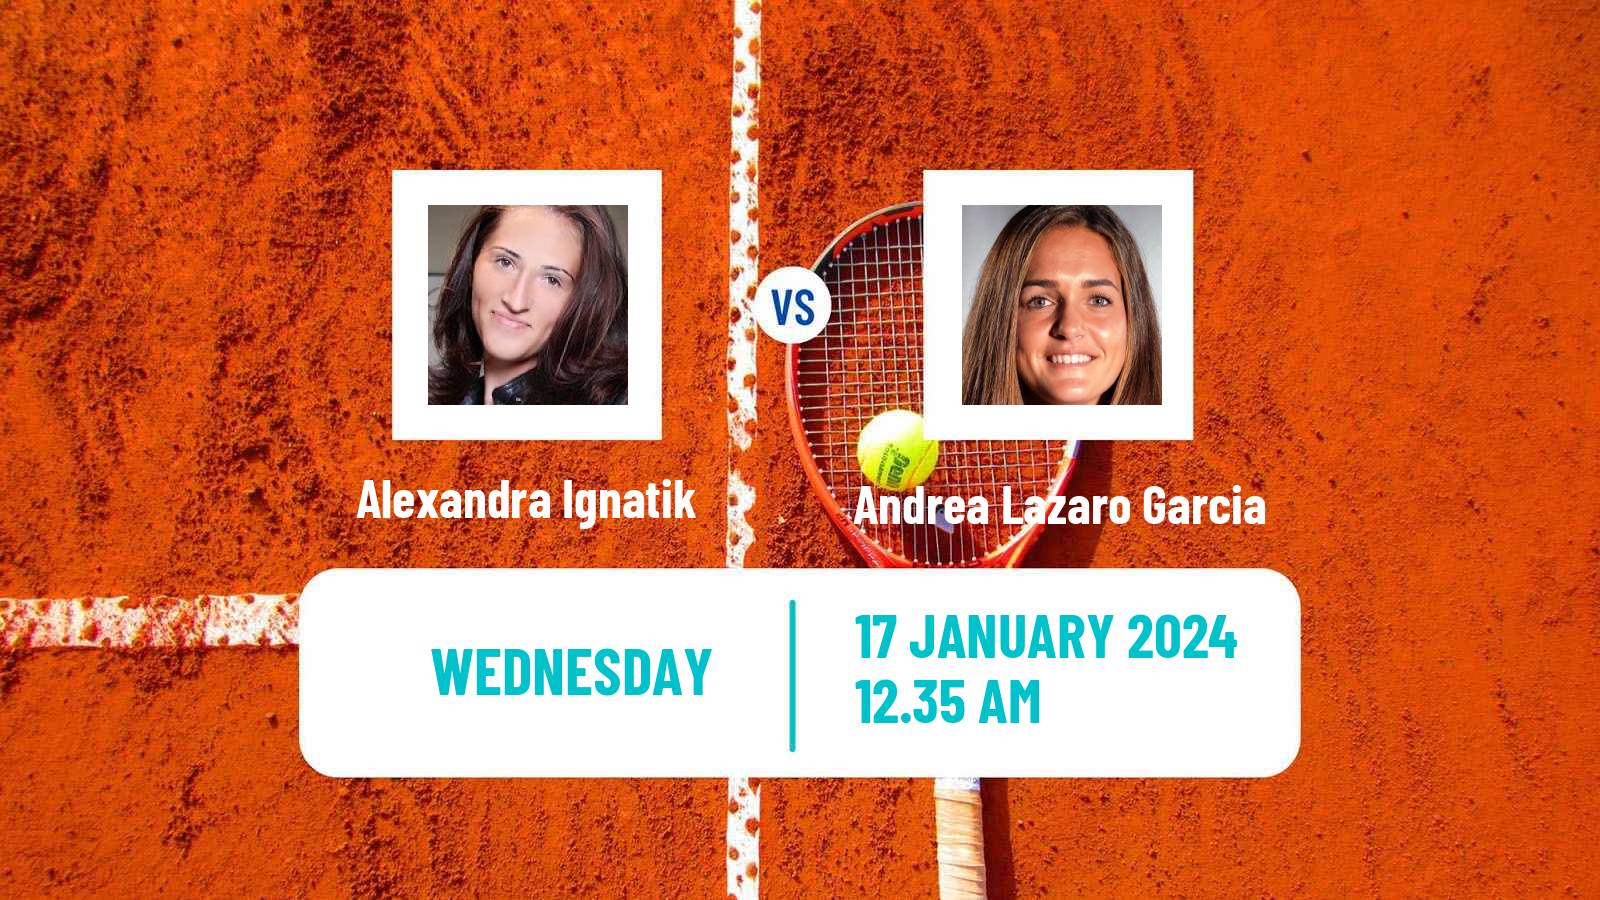 Tennis ITF W50 Antalya Women Alexandra Ignatik - Andrea Lazaro Garcia